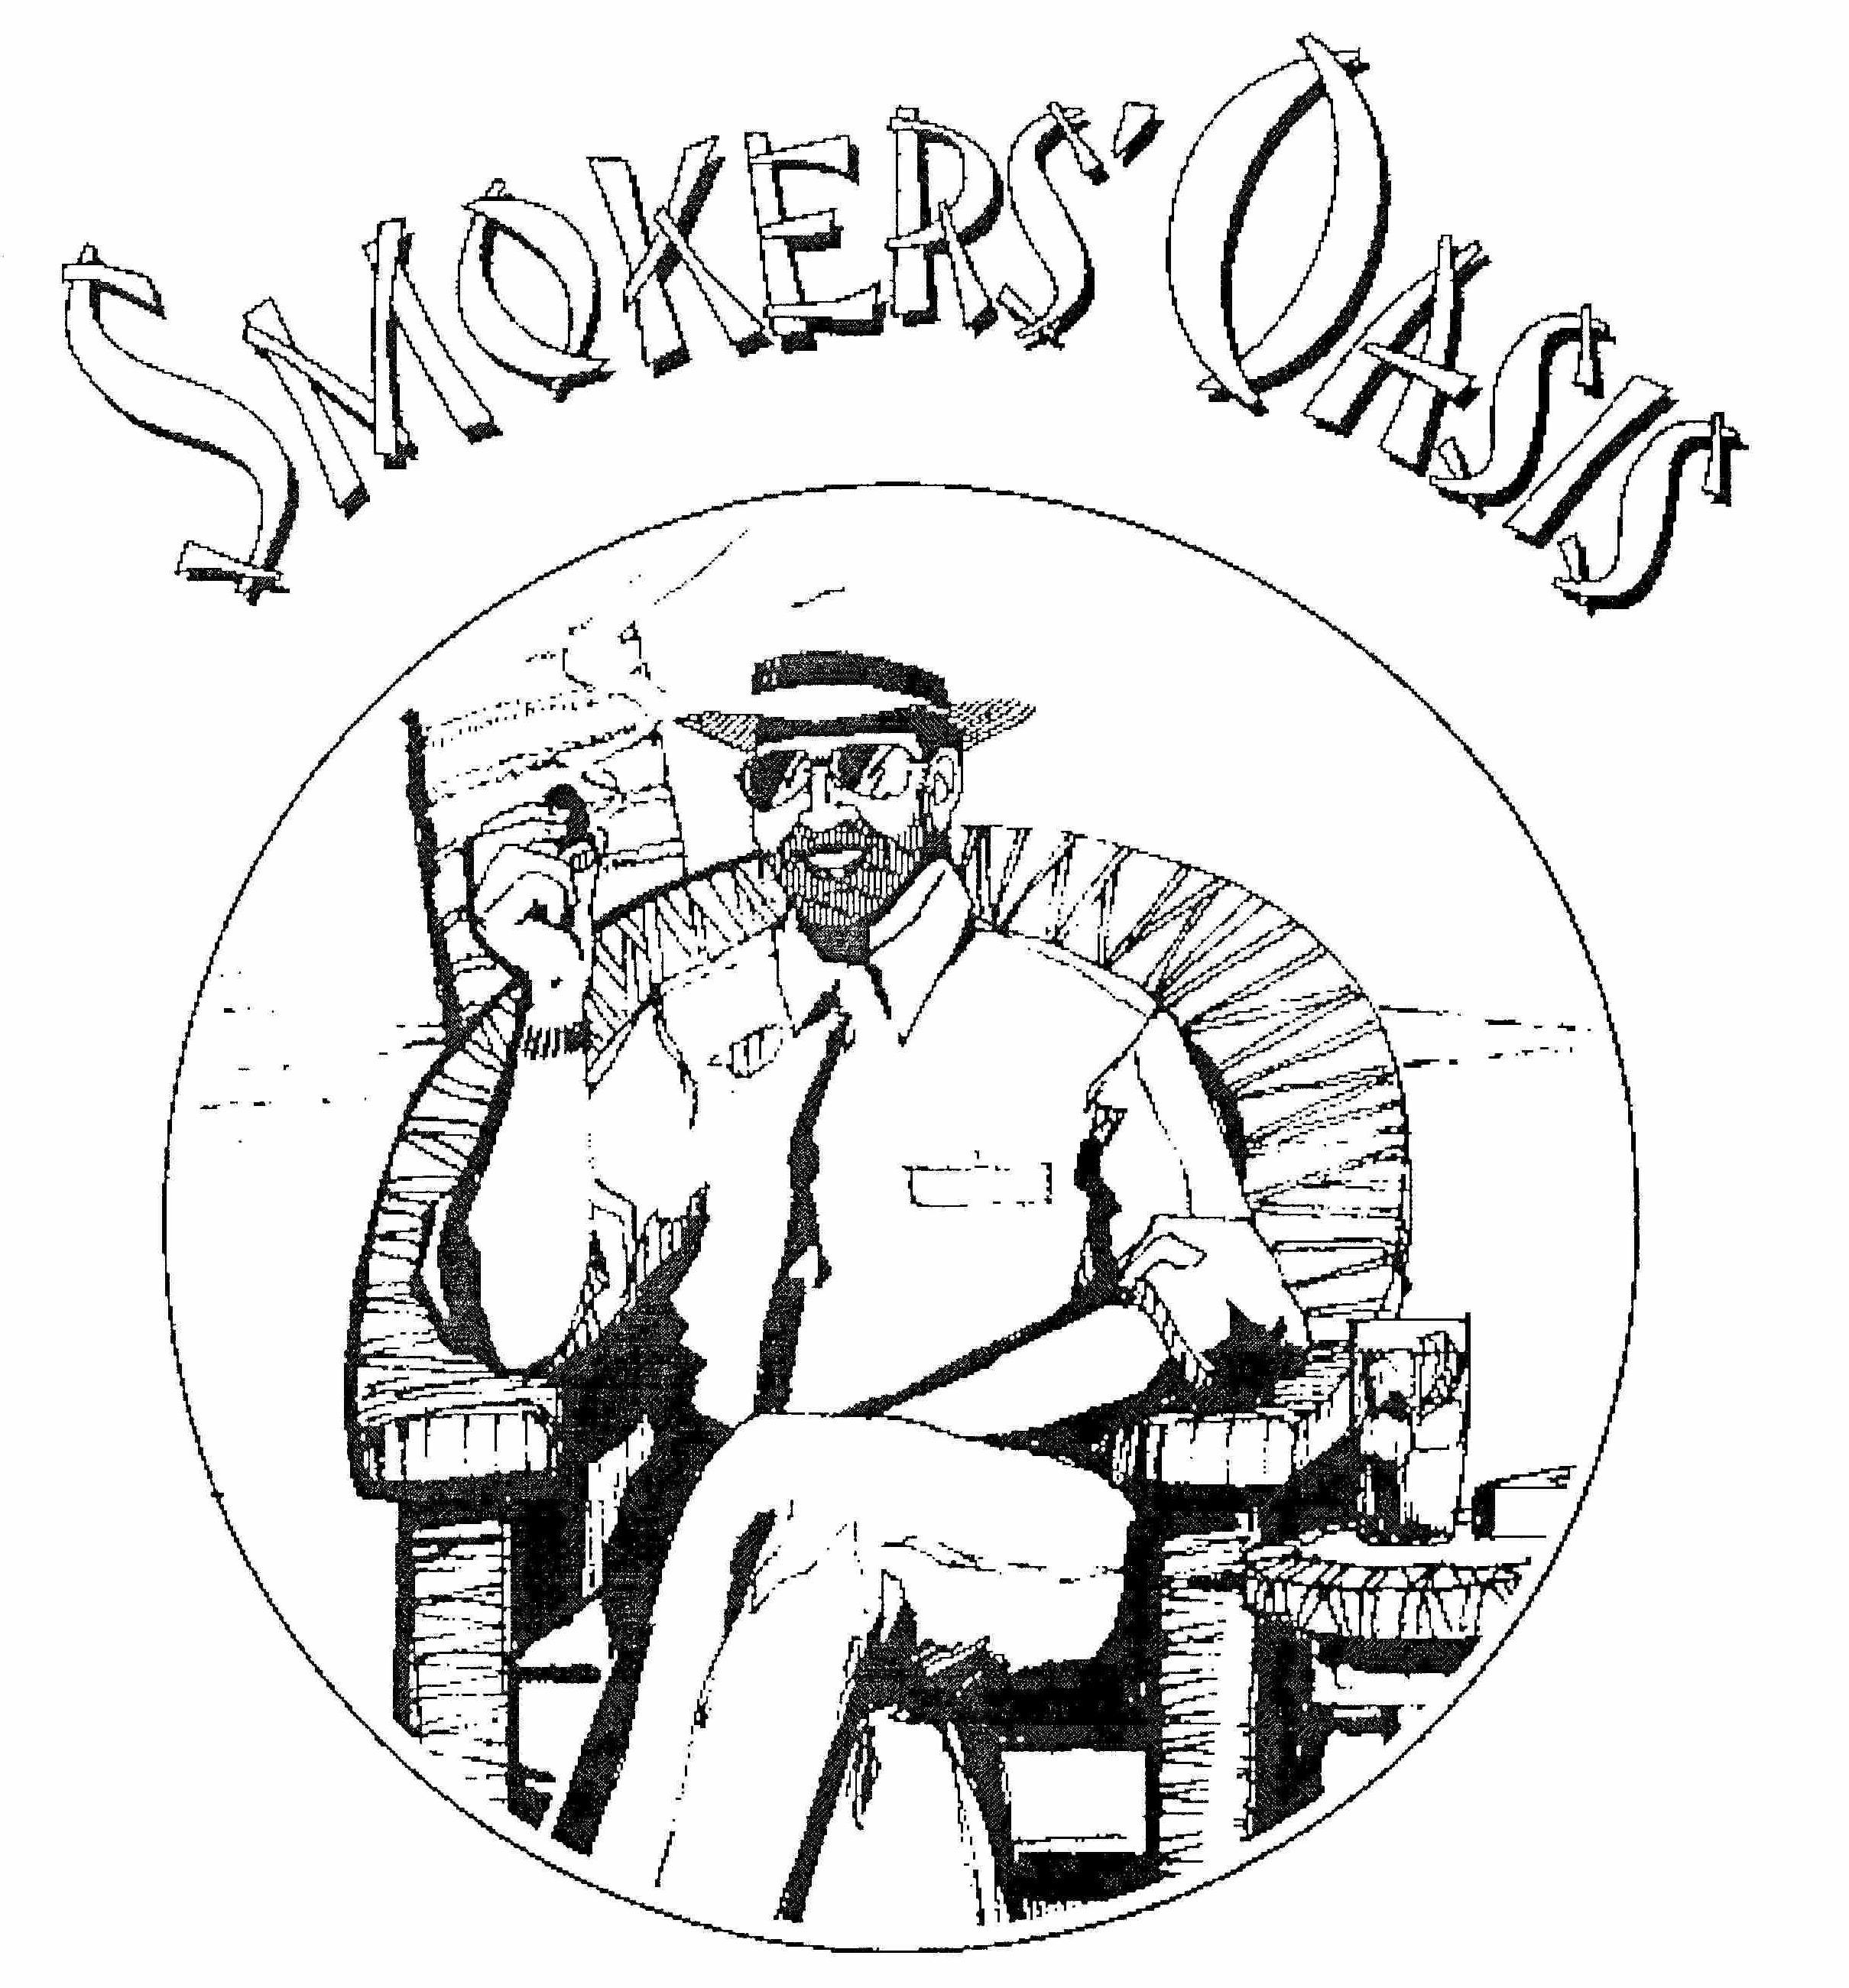  SMOKERS' OASIS